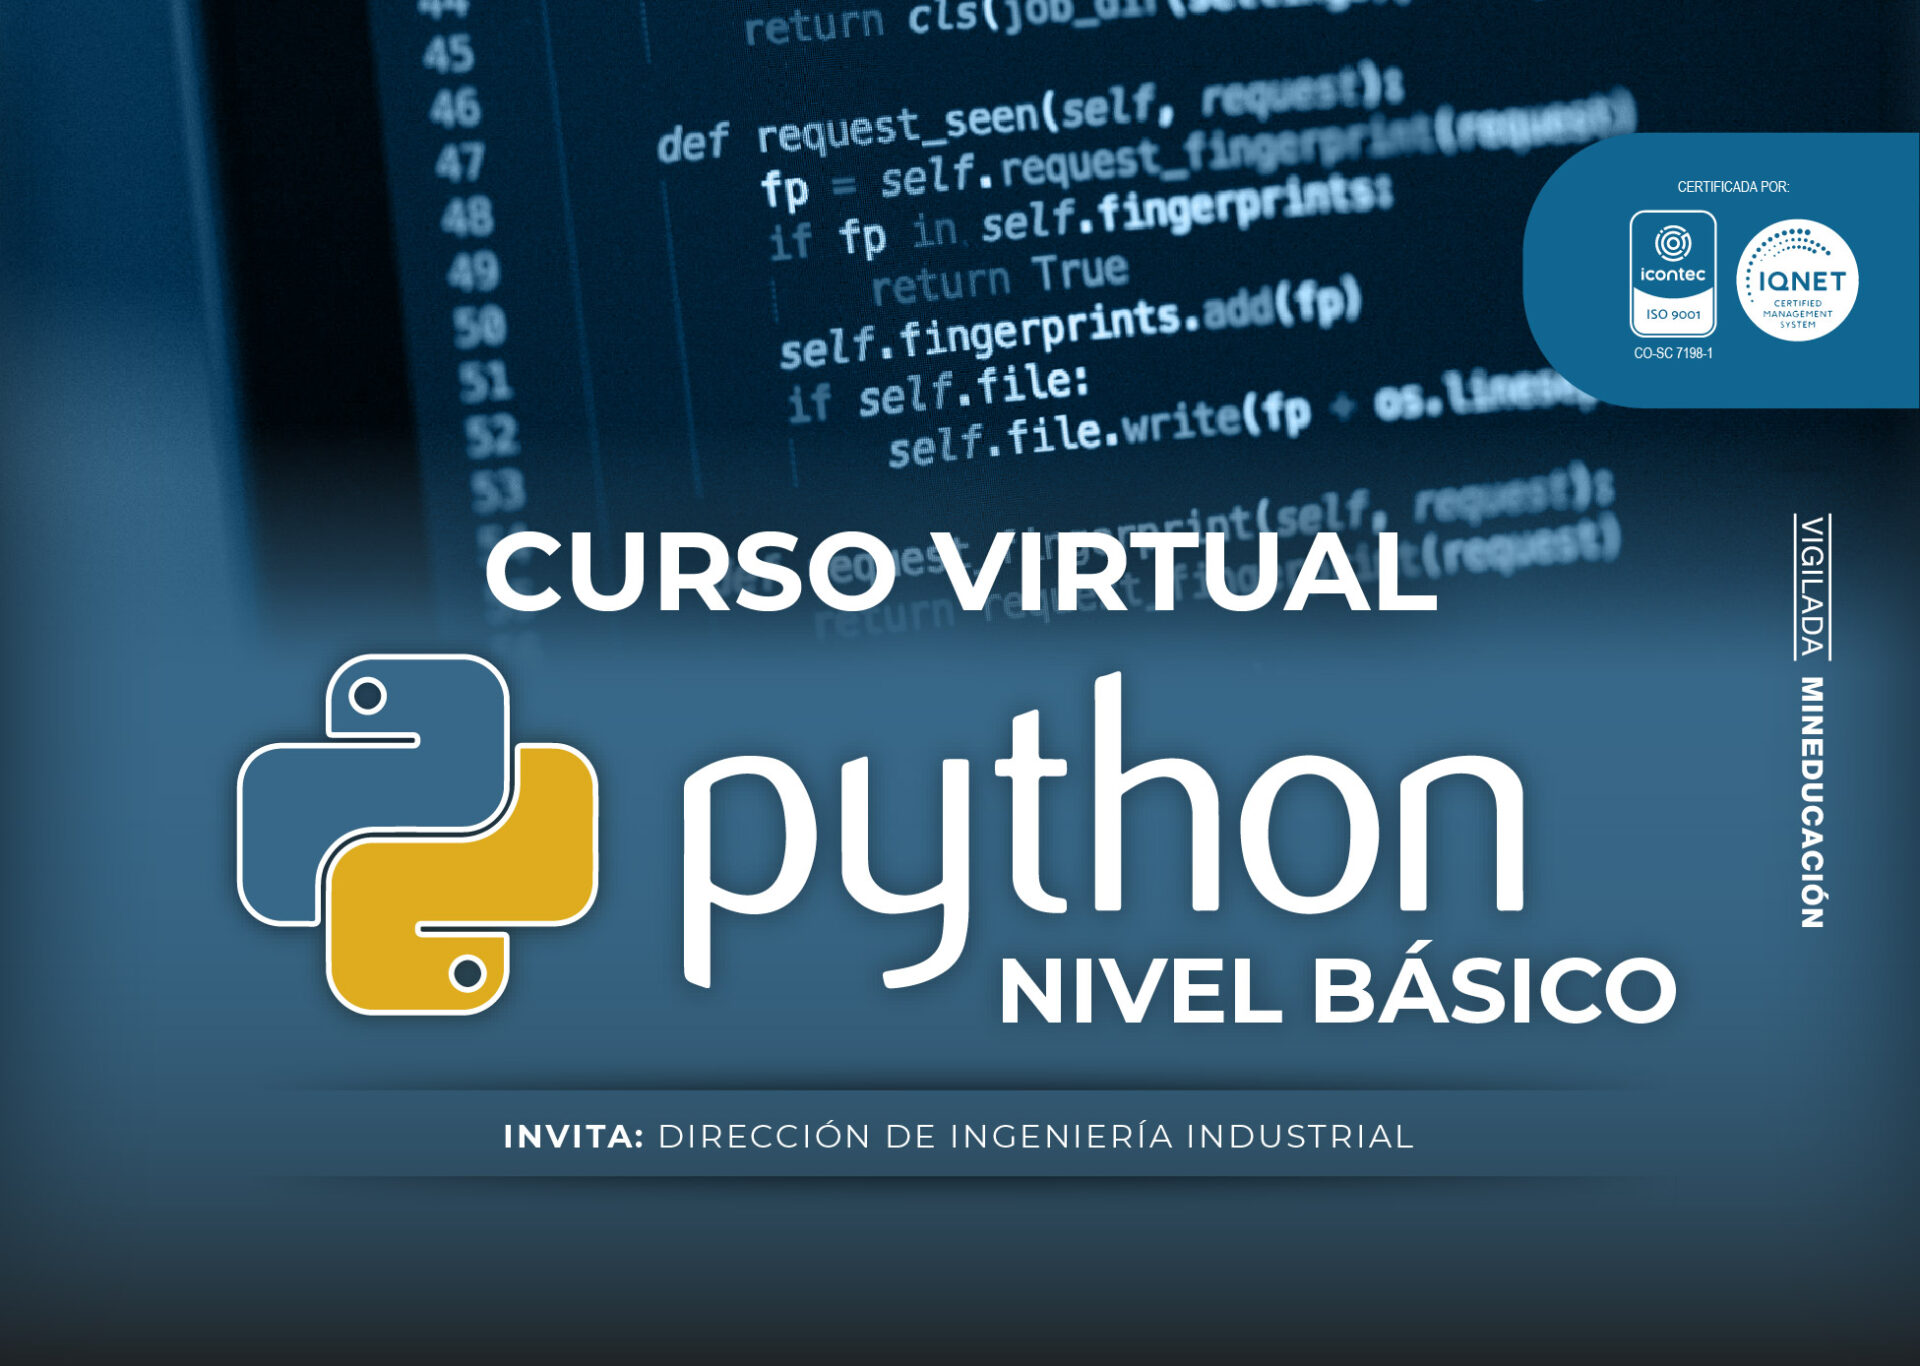 Curso virtual python nivel básico